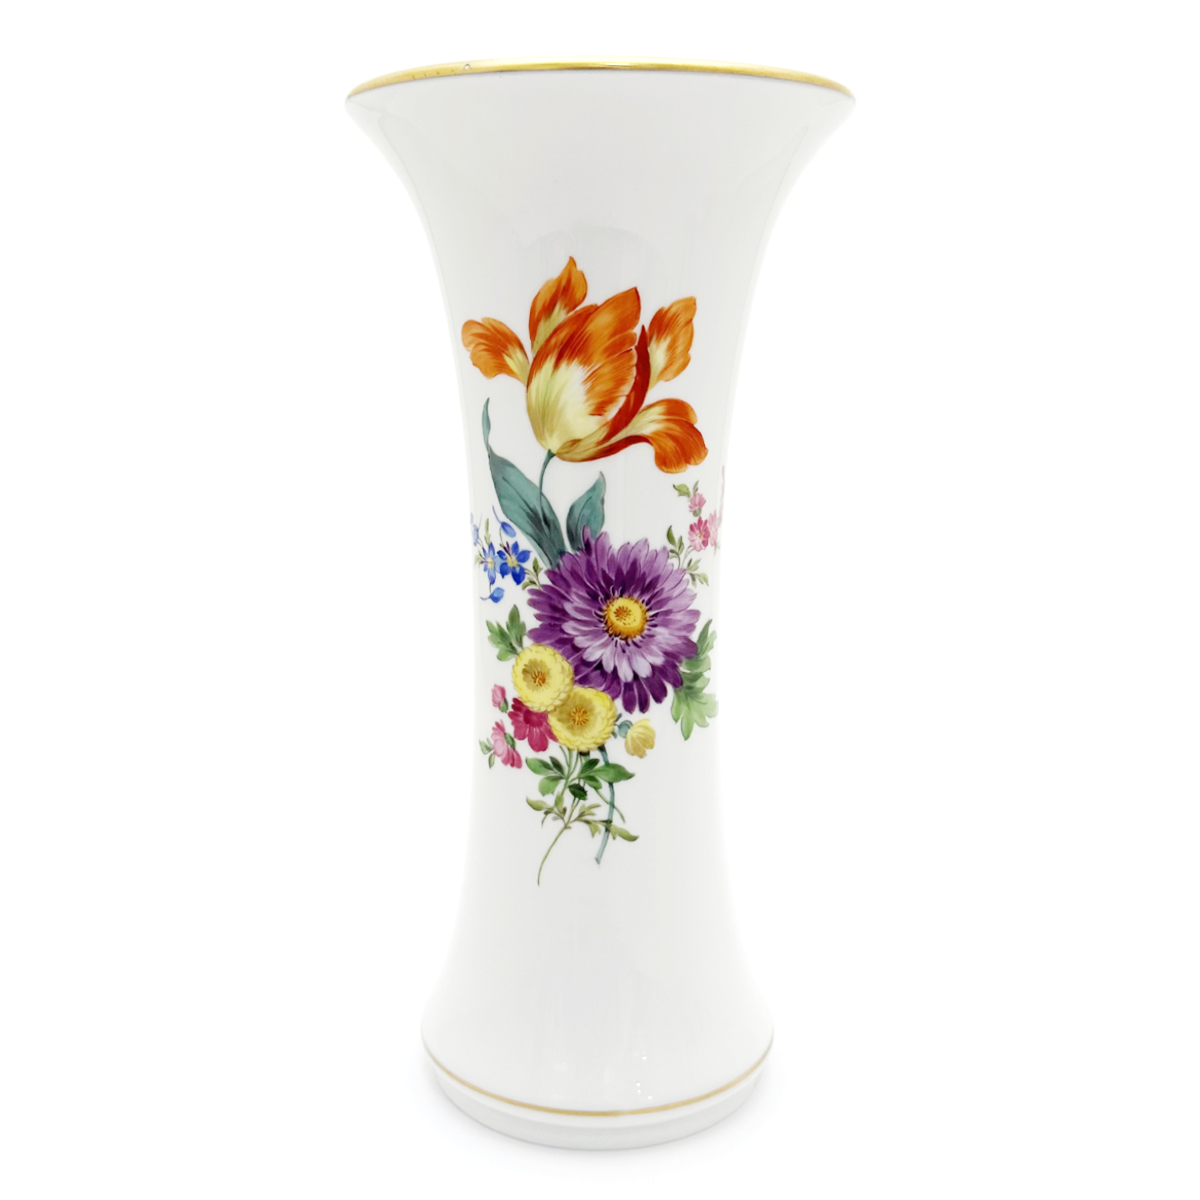 マイセン(Meissen) 花瓶 100110/50272 ベーシックフラワー 五つ花 金彩